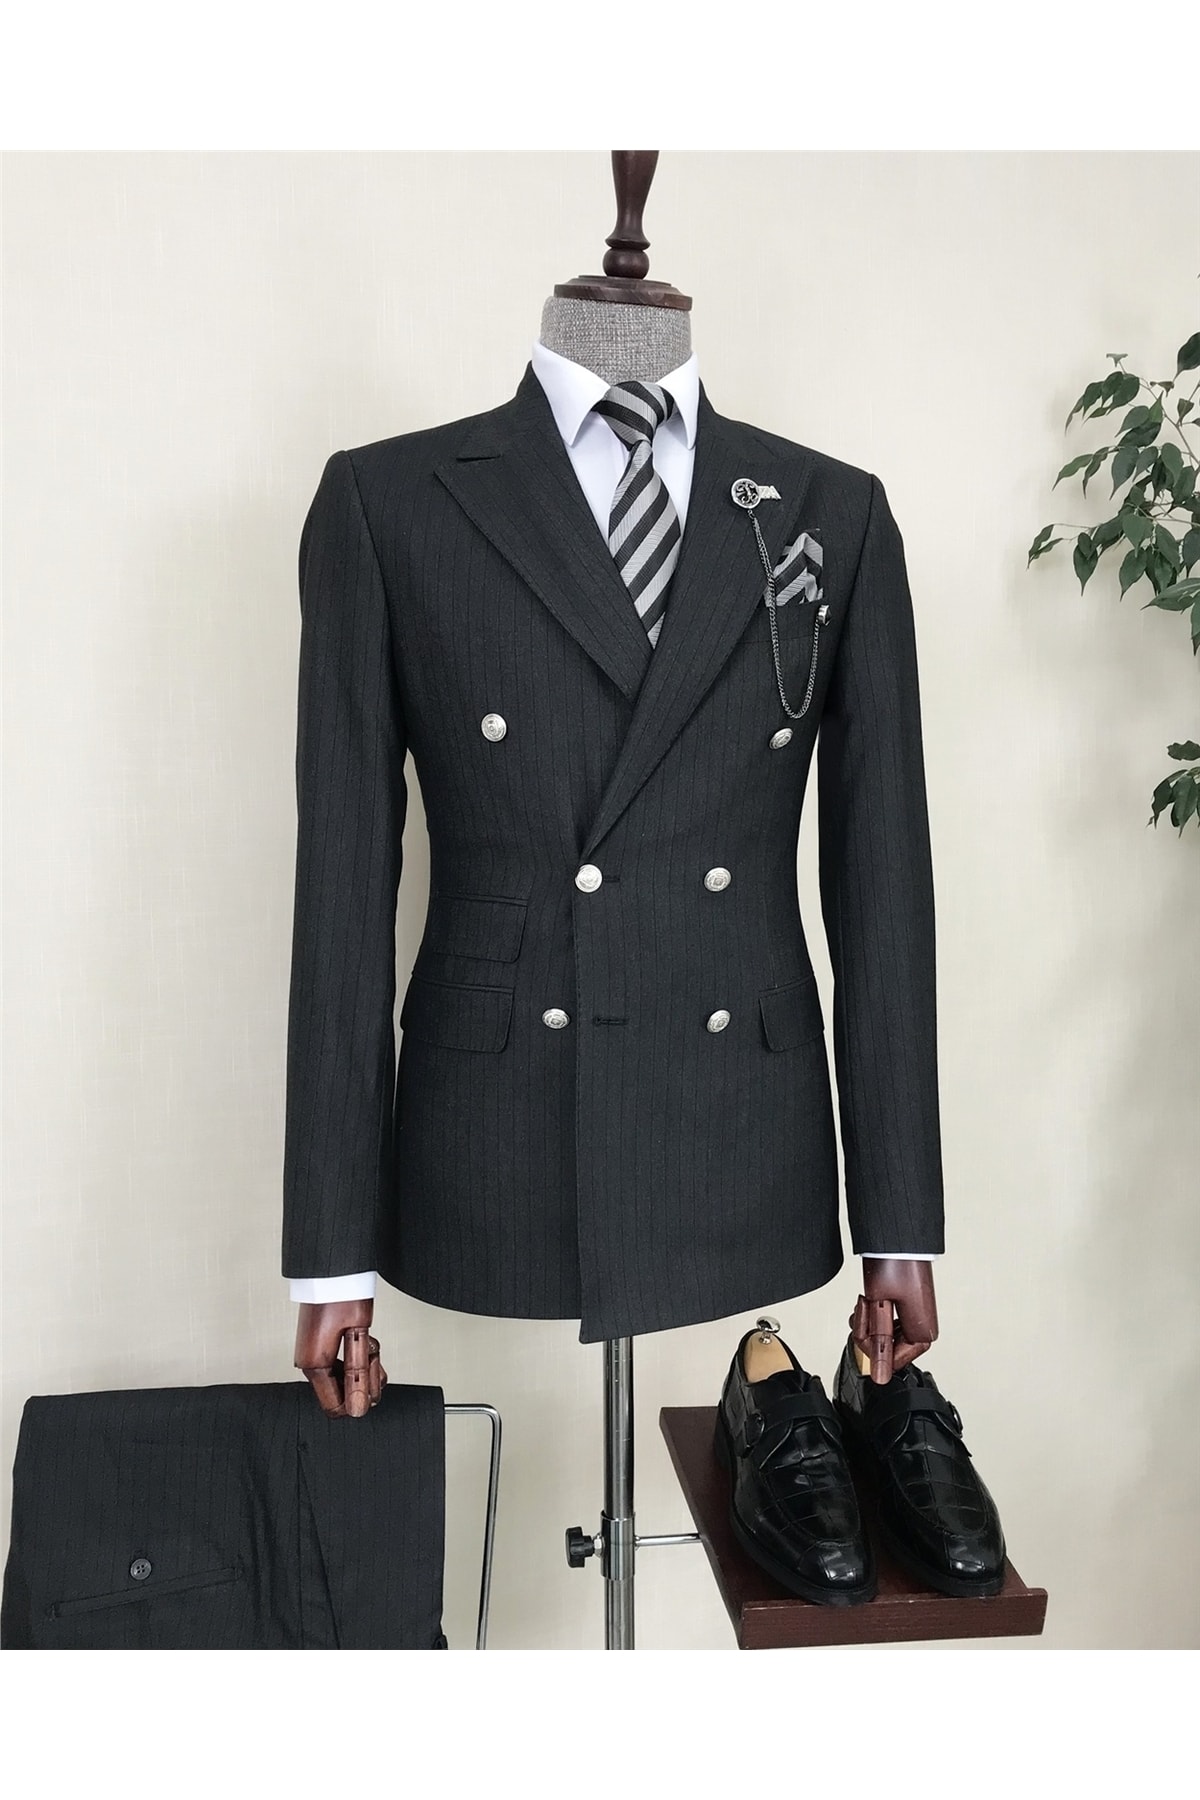 TerziAdemAltun Italyan Stil Çizgili Kruvaze Ceket Pantolon Takım Elbise Antrasit T8607